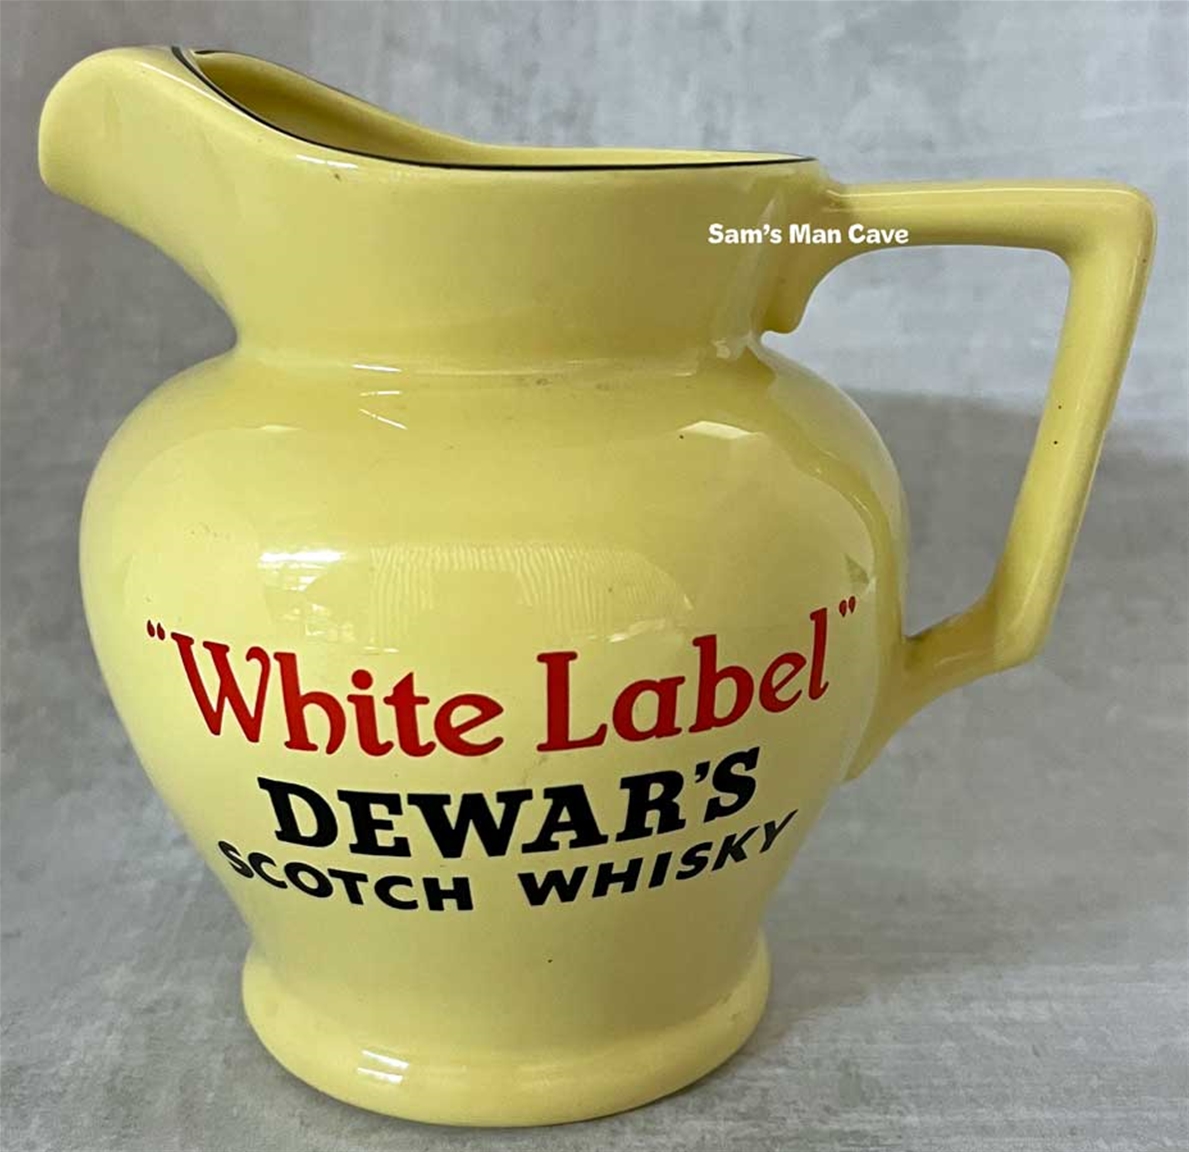 Dewar's White Label Scotch Whisky Pitcher